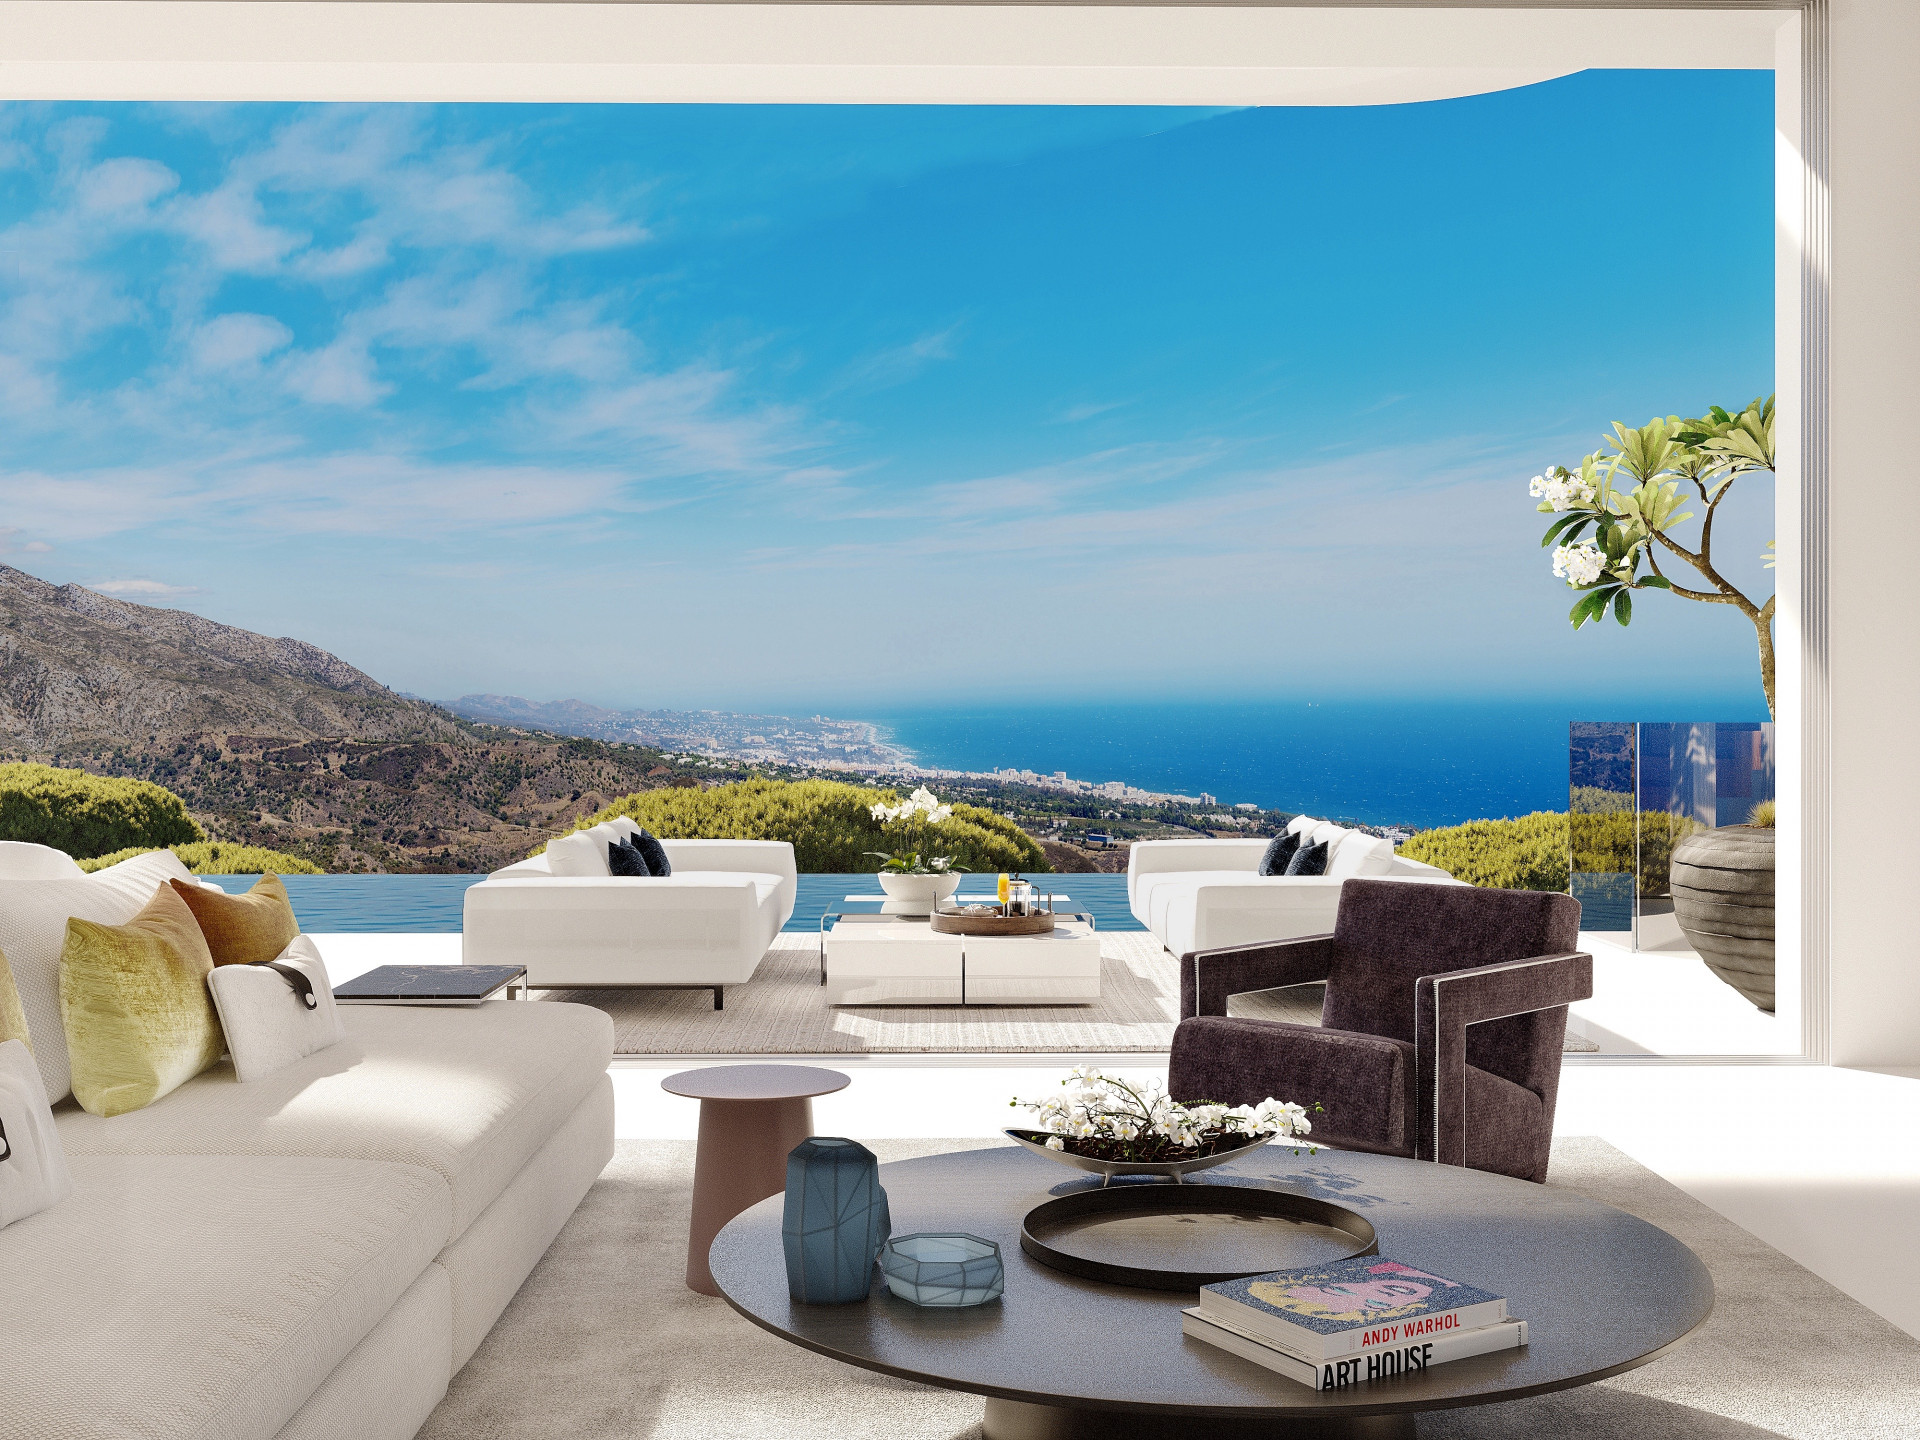 Vista Lago Residences: Exclusive 3 and 4 bedroom villas overlooking the Marbella coastline. | Image 1